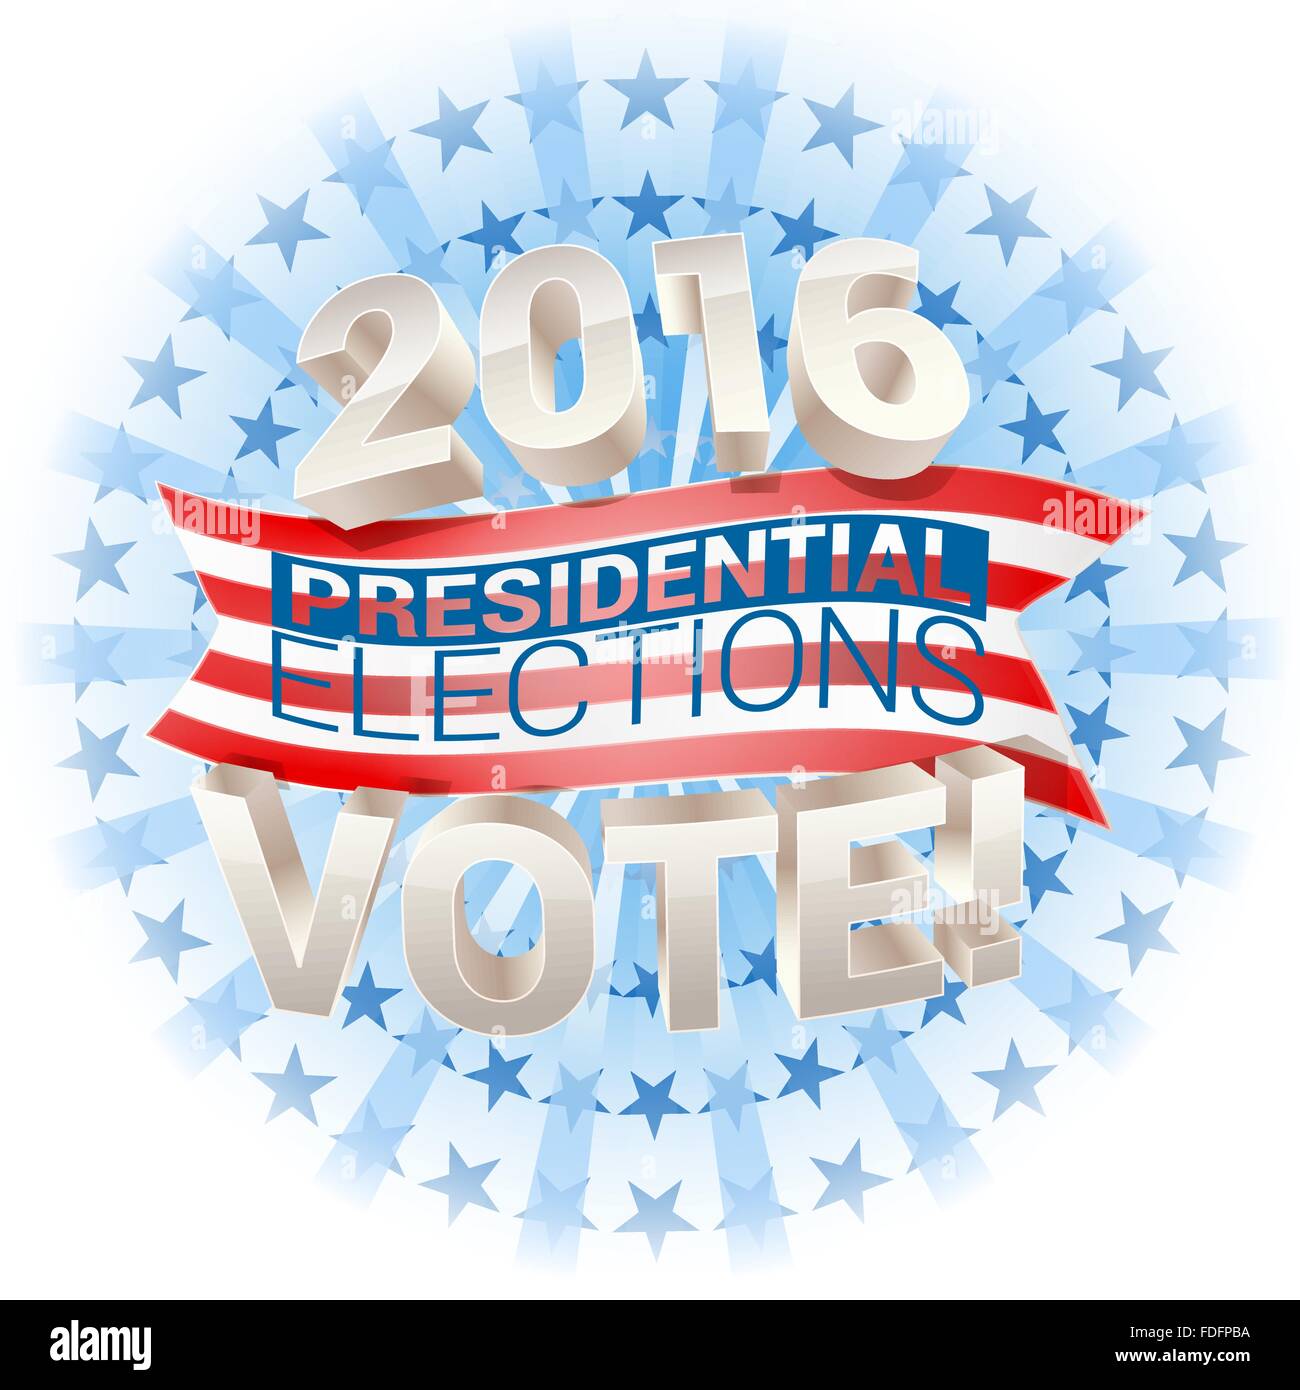 2016 presidential election in usa. vector Stock Vector